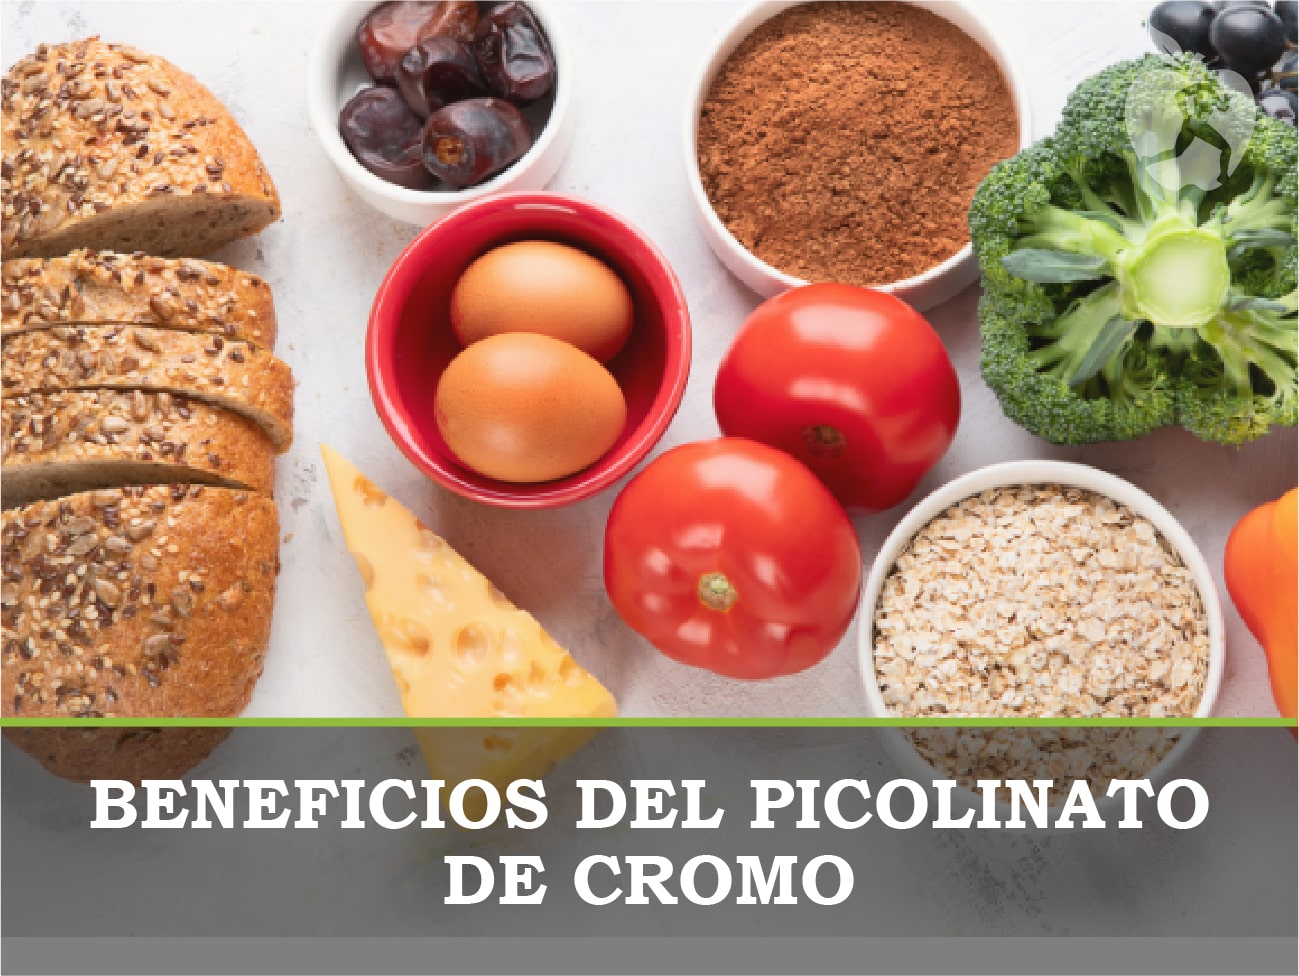 Consejo Inválido taburete Beneficios del Picolinato de Cromo - Dietetica Ferrer